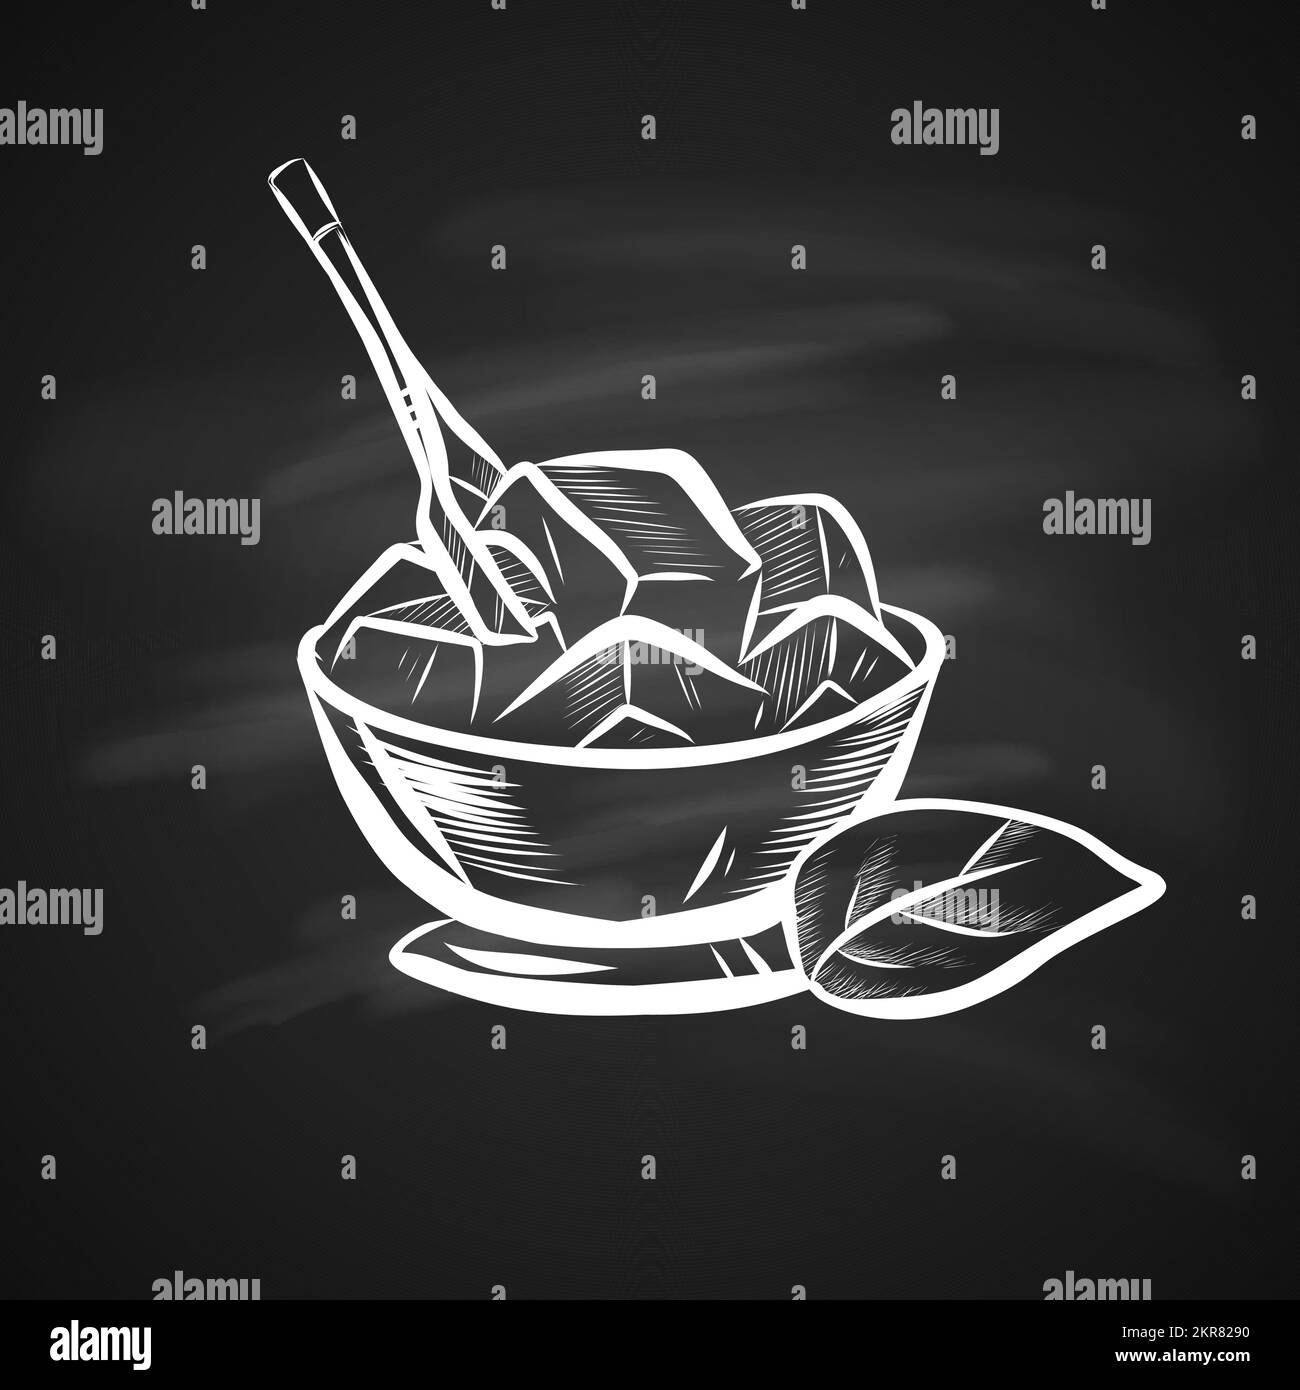 Ilustración de boceto de la hoja de menta y del tazón de hielo. Icono dibujado a mano en la Pizarra Ilustración del Vector